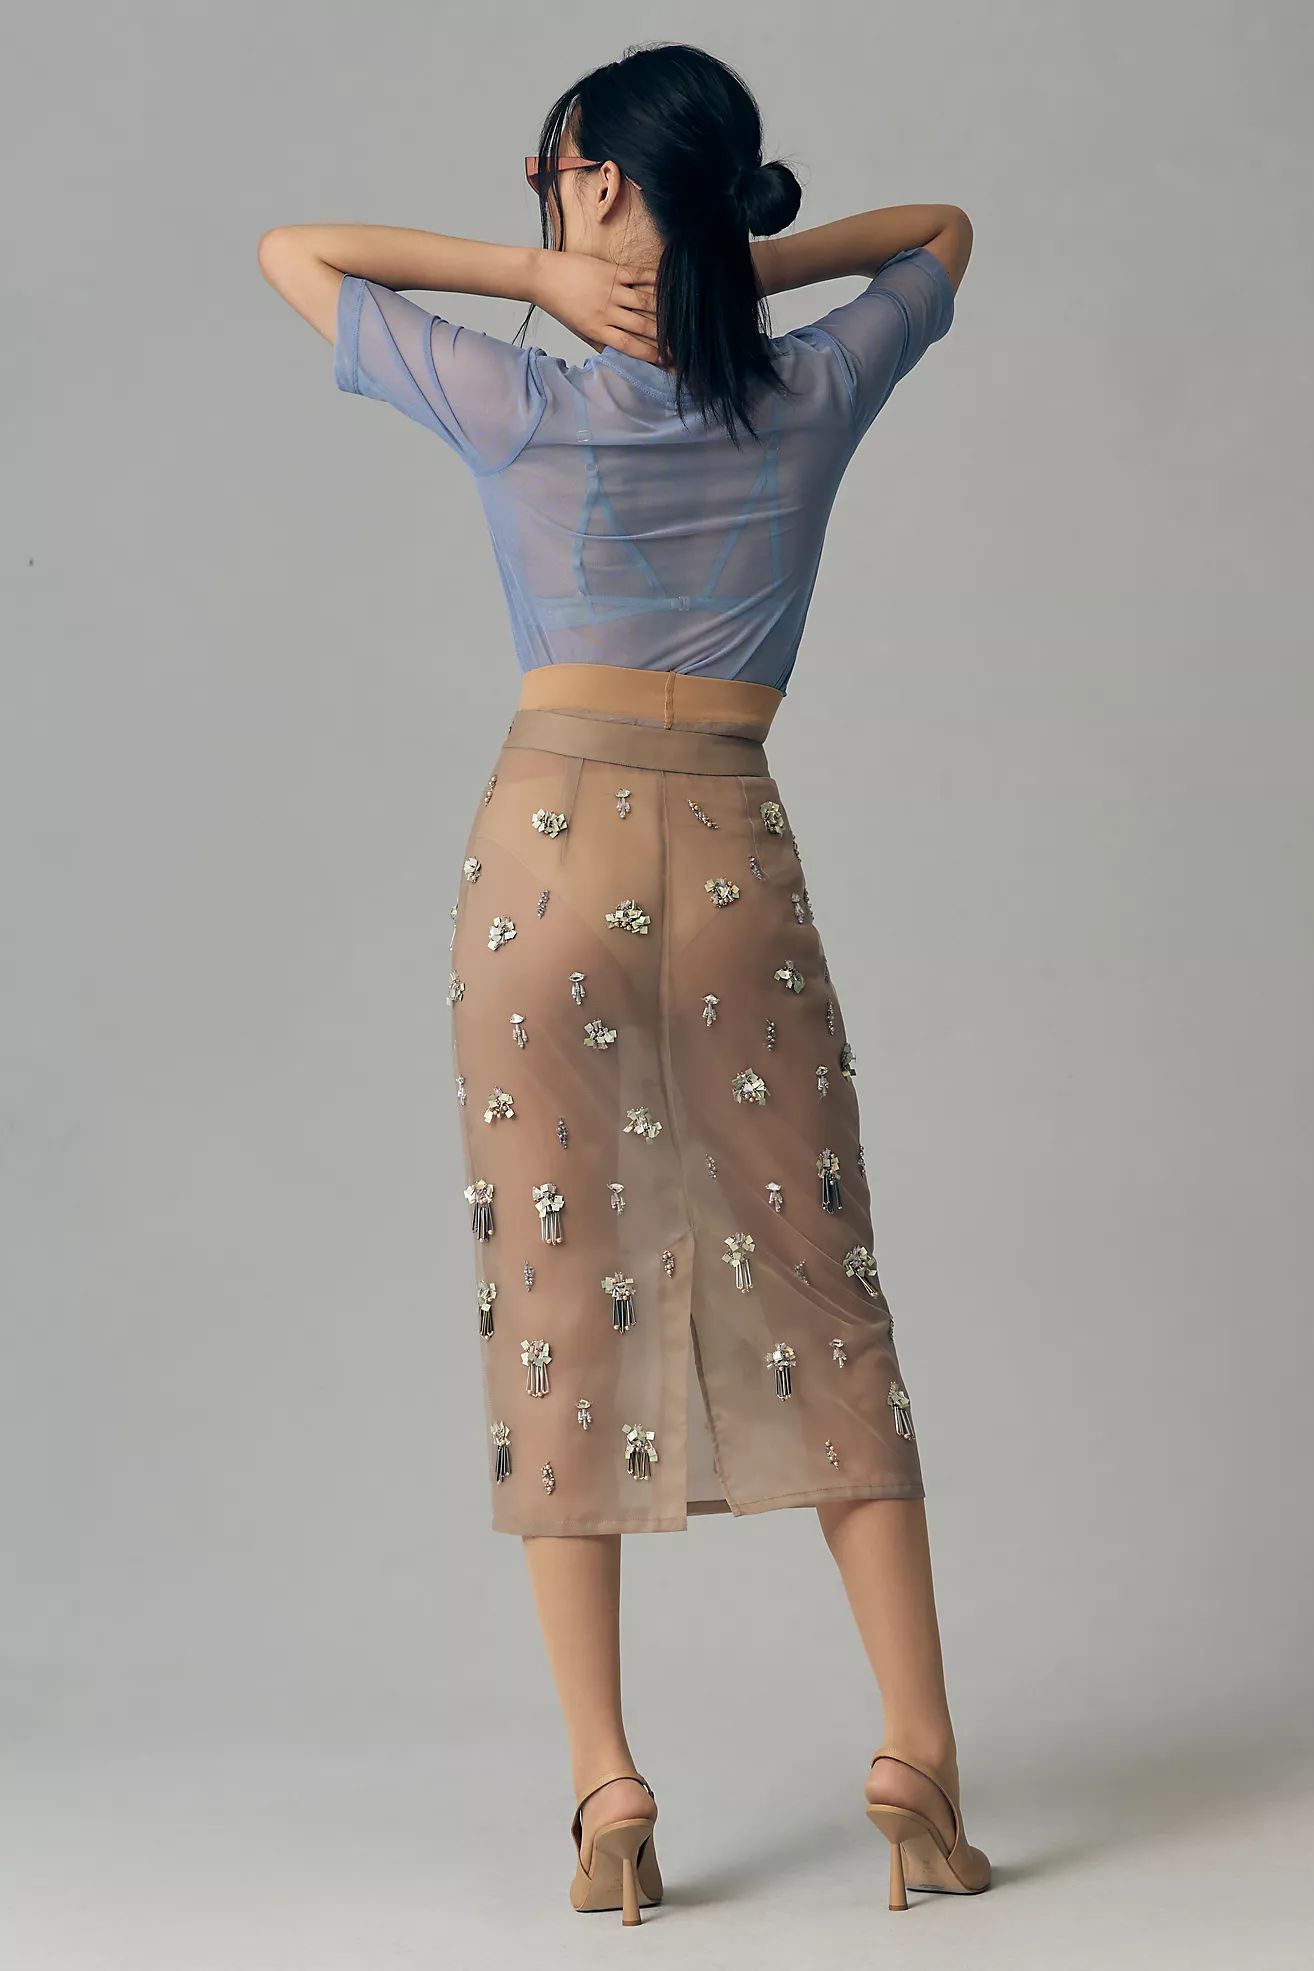 Geisha Designs Sheer Embellished Skirt | Anthropologie (US)